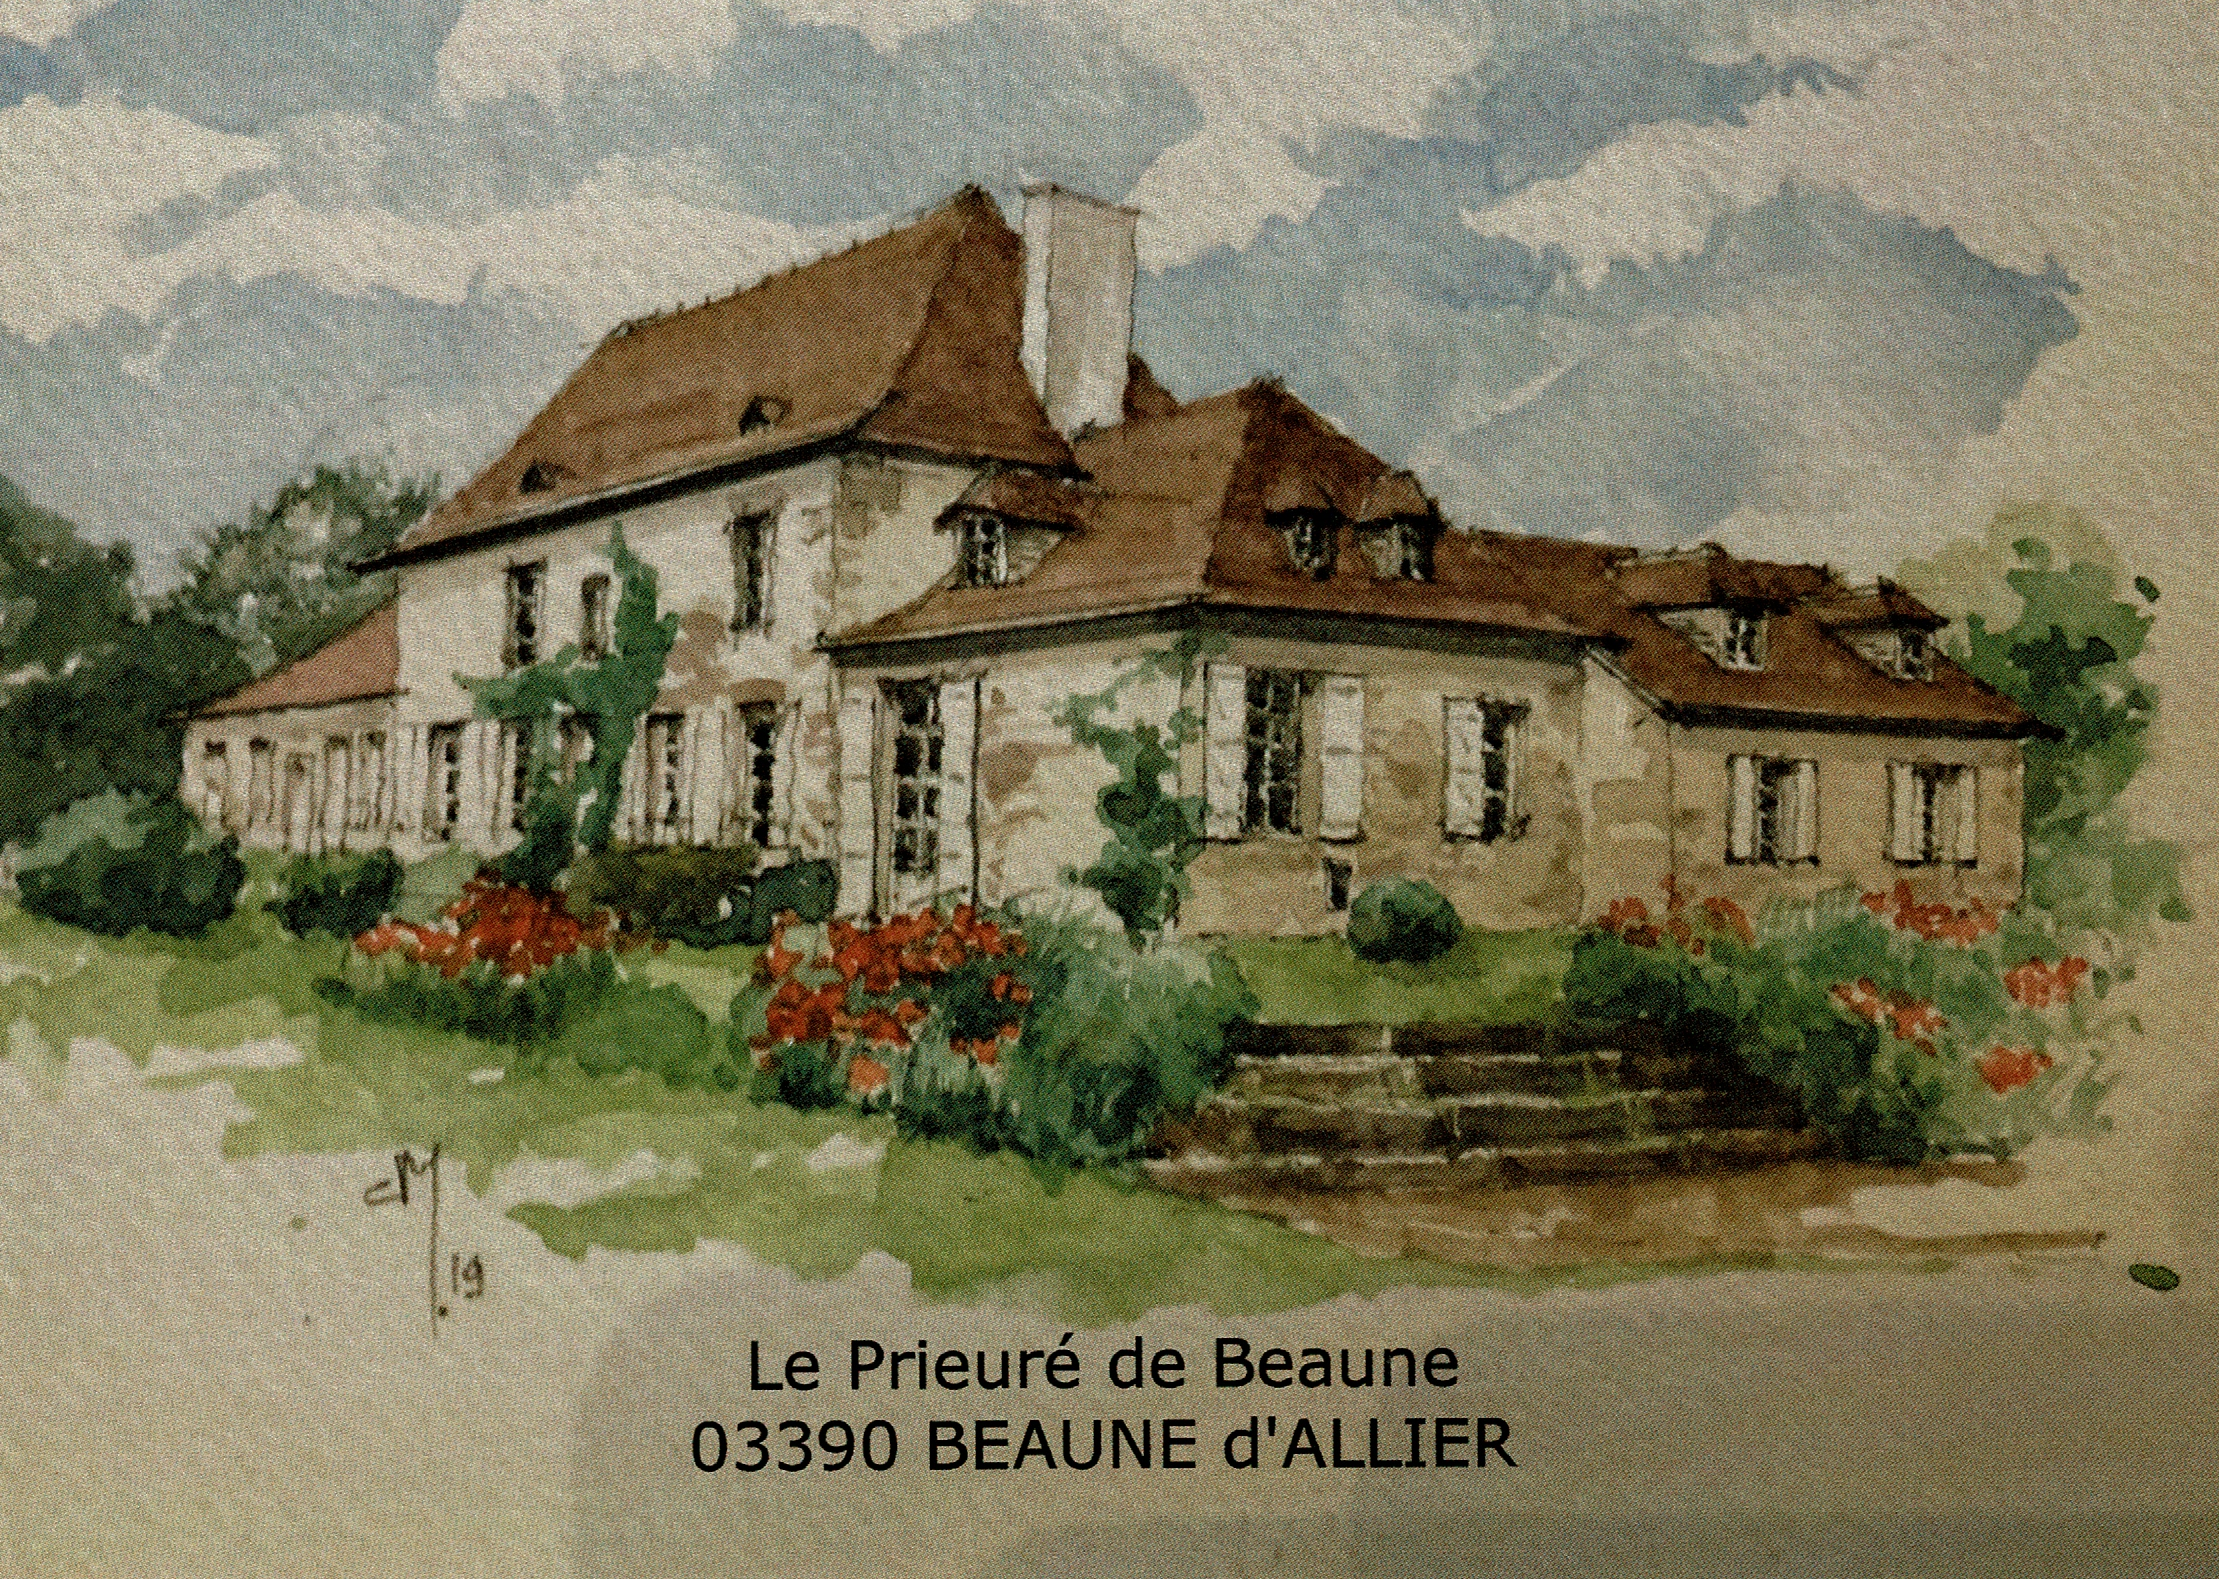 Beaune d'Allier - Le Prieuré